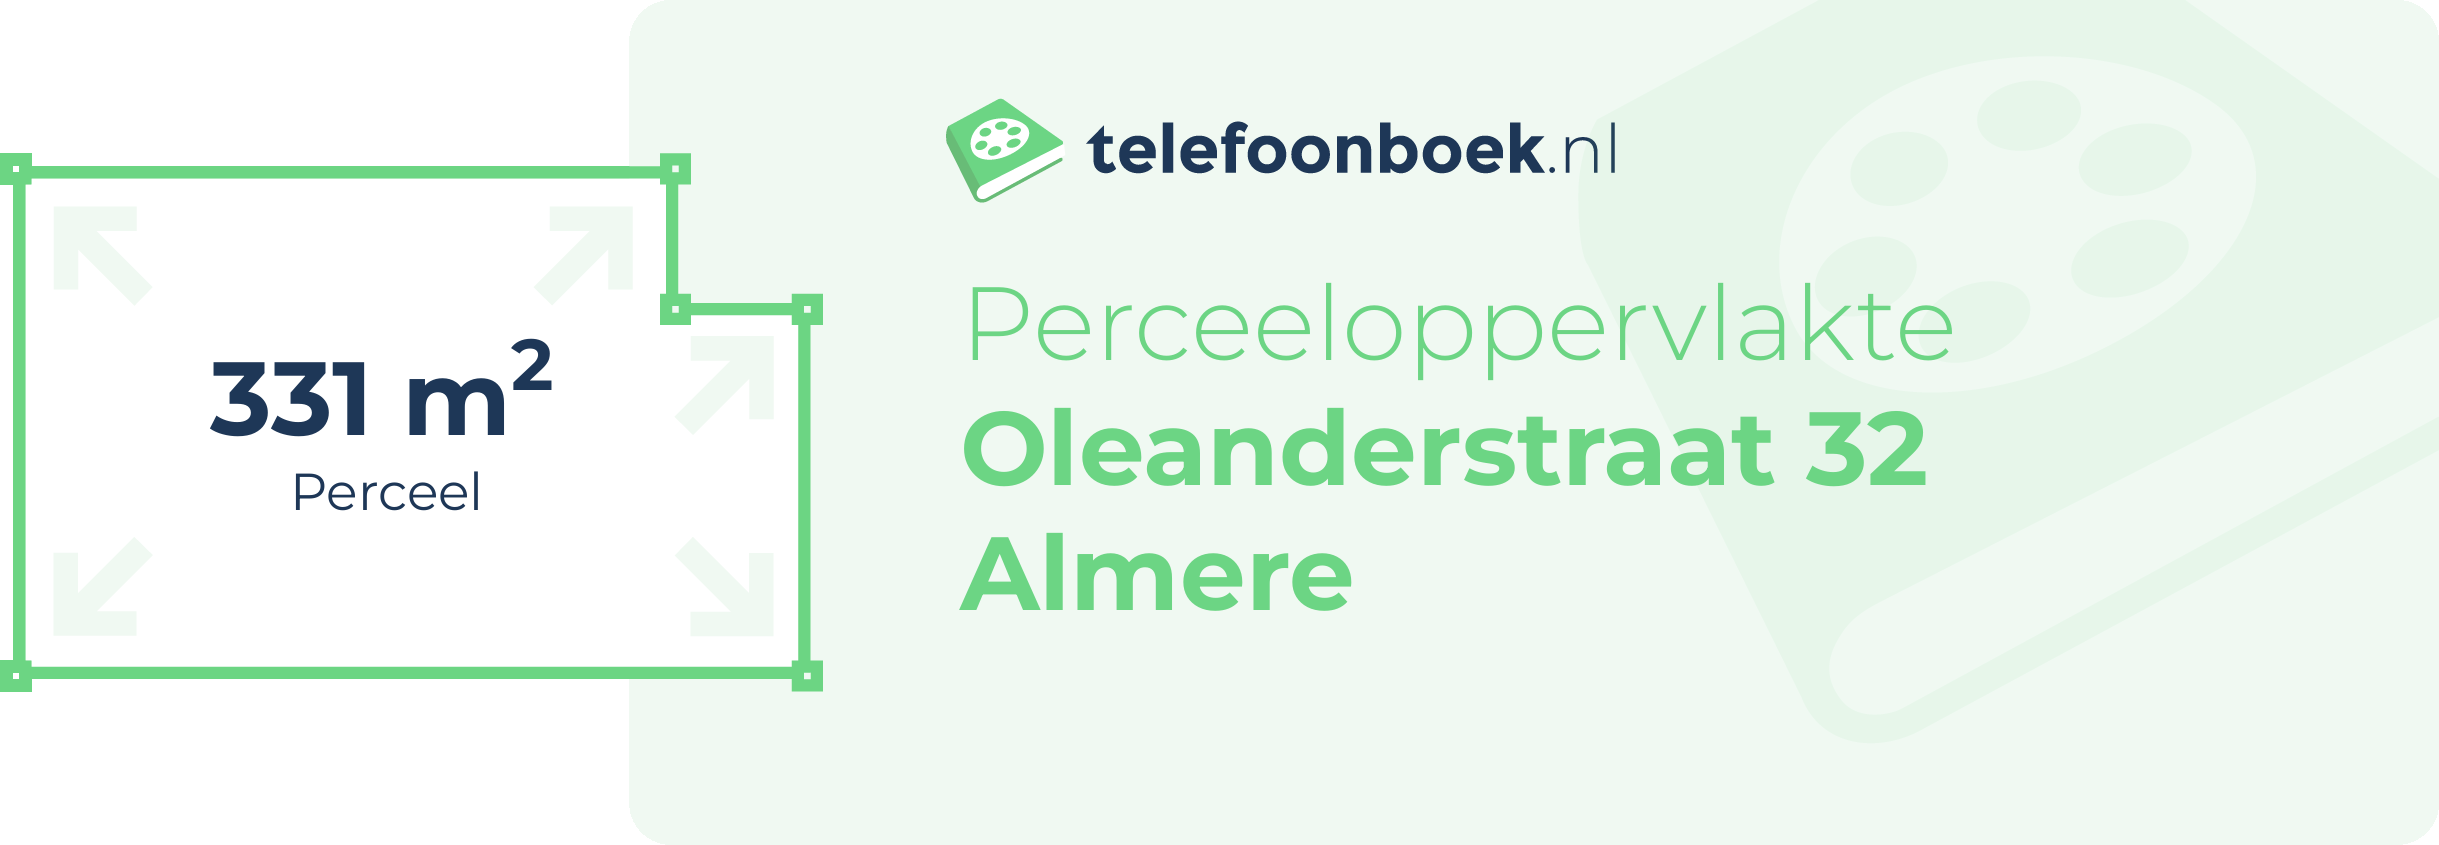 Perceeloppervlakte Oleanderstraat 32 Almere